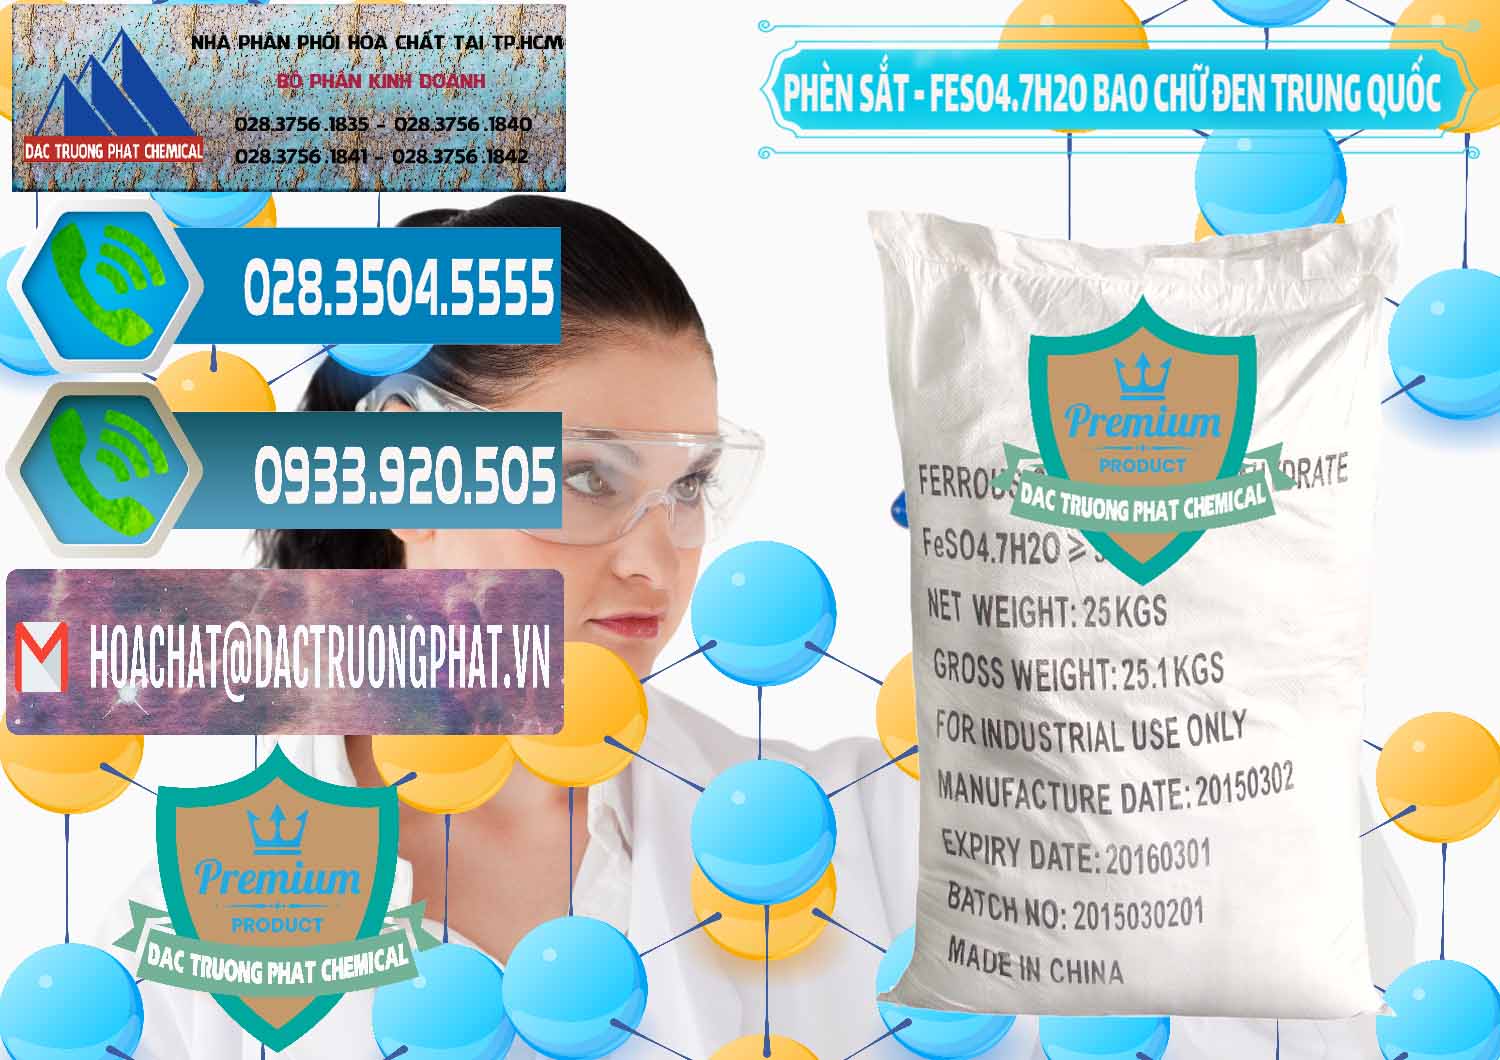 Cty bán - cung cấp Phèn Sắt - FeSO4.7H2O Bao Chữ Đen Trung Quốc China - 0234 - Nơi chuyên kinh doanh ( cung cấp ) hóa chất tại TP.HCM - congtyhoachat.net